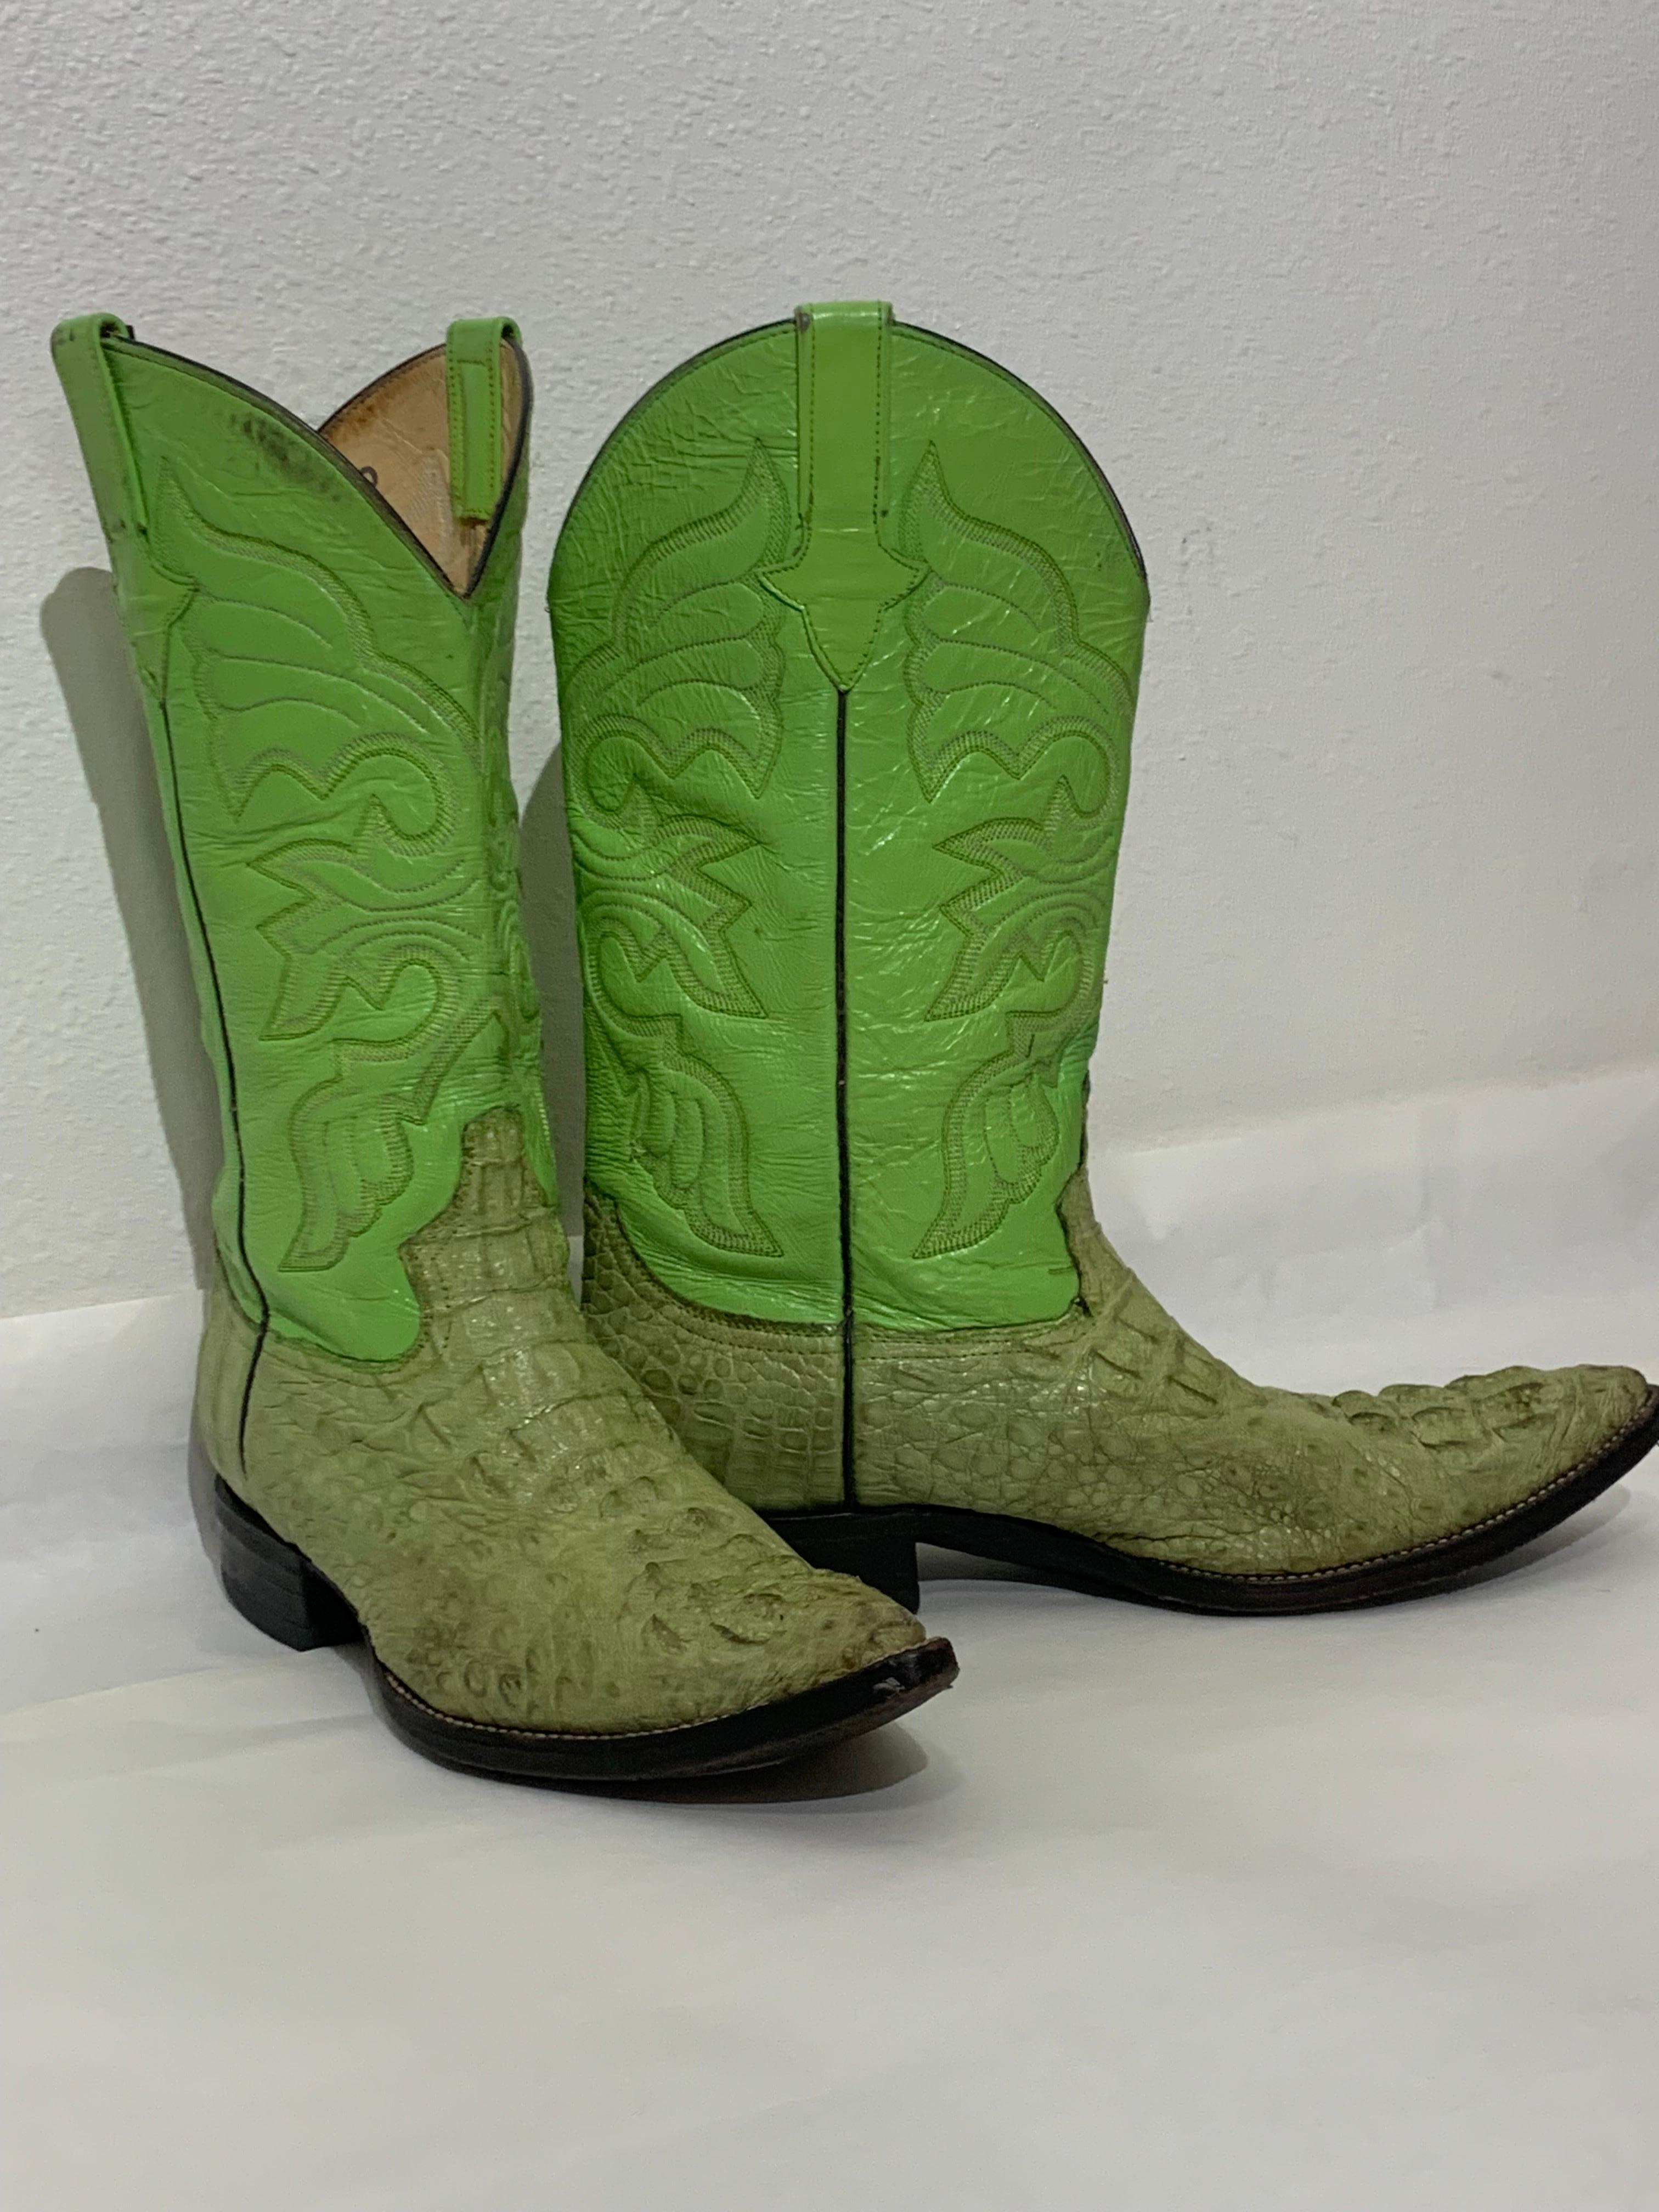 Gecko Green Leather & Crocodile Western Cowboy Boots US Size 8 : Bottes en cuir de marque Hemisferio avec dessus cousu à l'occidentale et empeignes en peau de crocodile à écailles extrêmes. Talon bas, semelles en cuir noir et bouts pointus. Taille 8